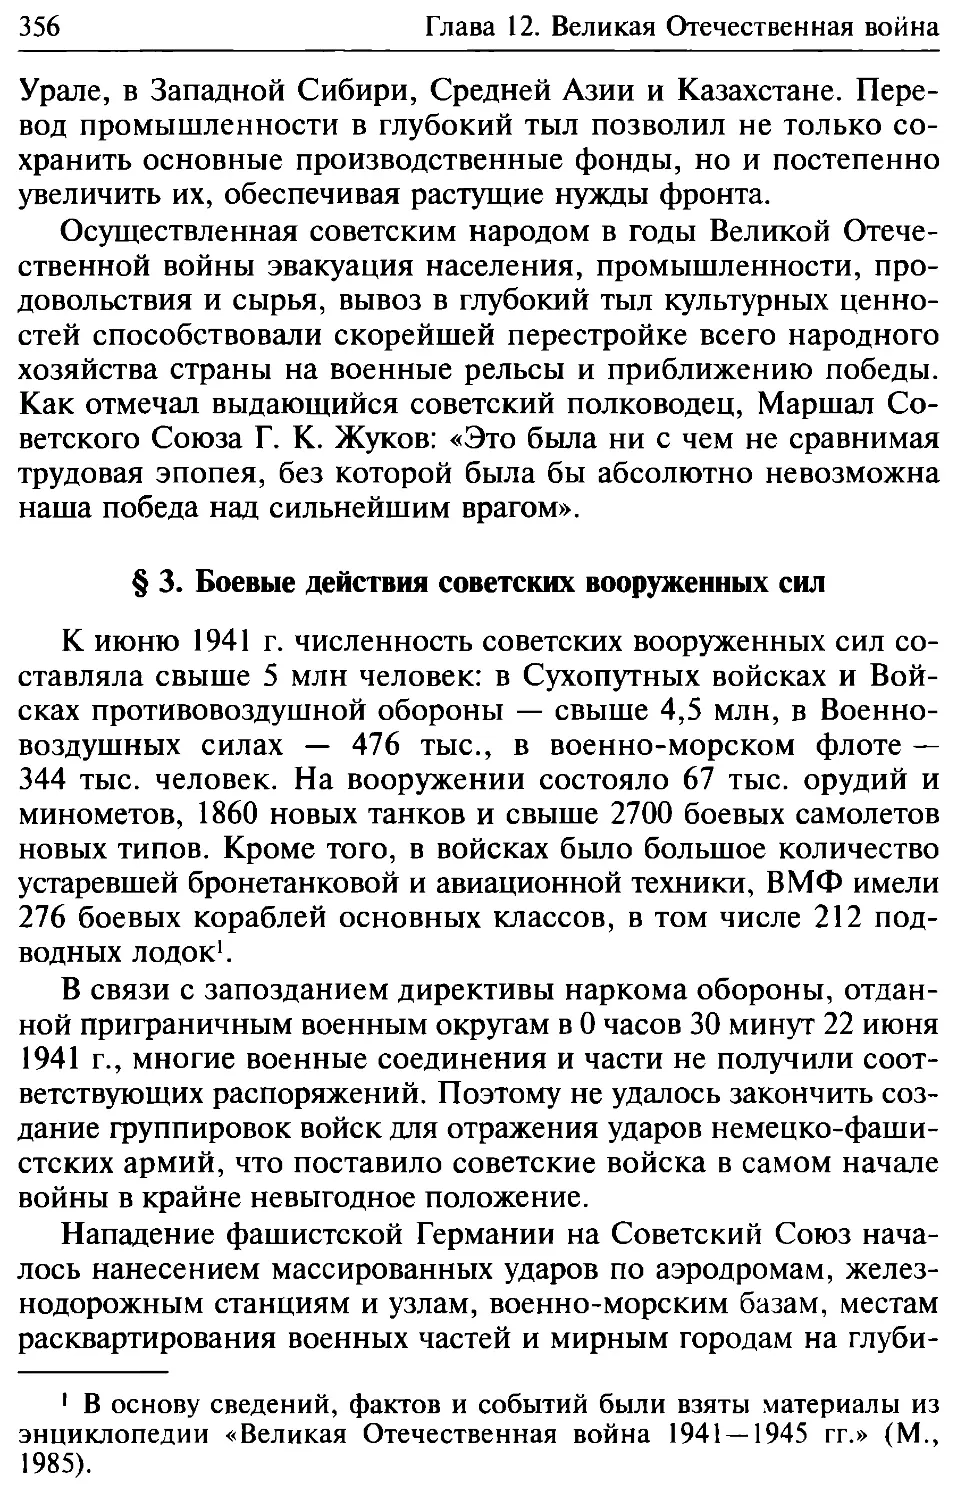 § 3. Боевые действия советских Вооруженных Сил